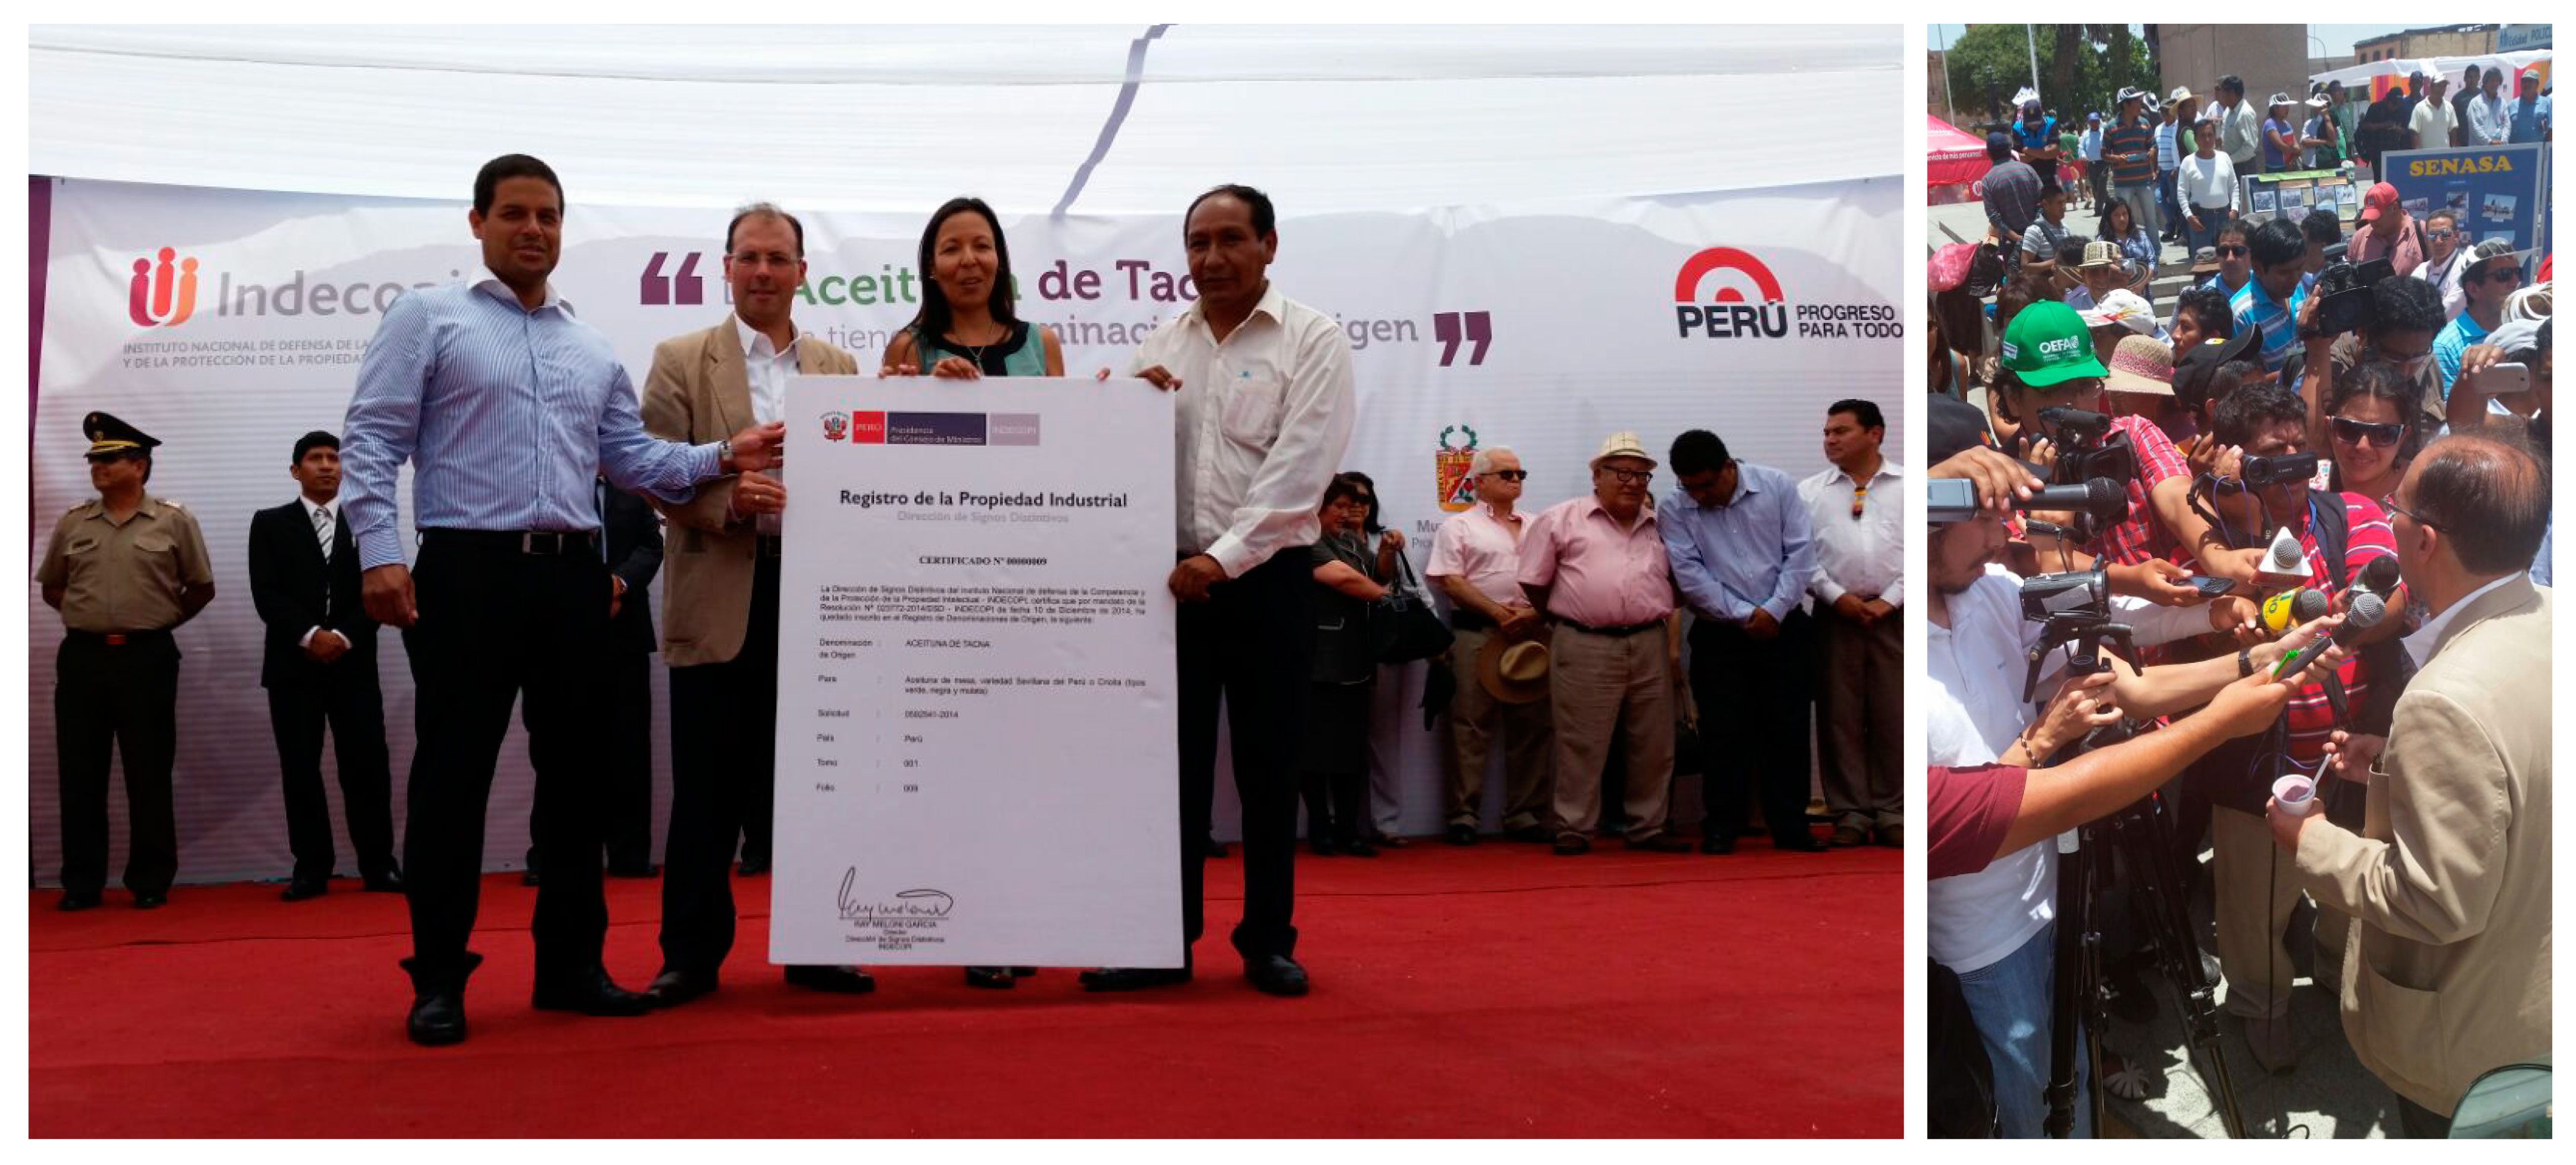 El presidente del Indecopi entregó el certificado de denominación de origen Aceituna Tacna a los olivicultores de la zona.